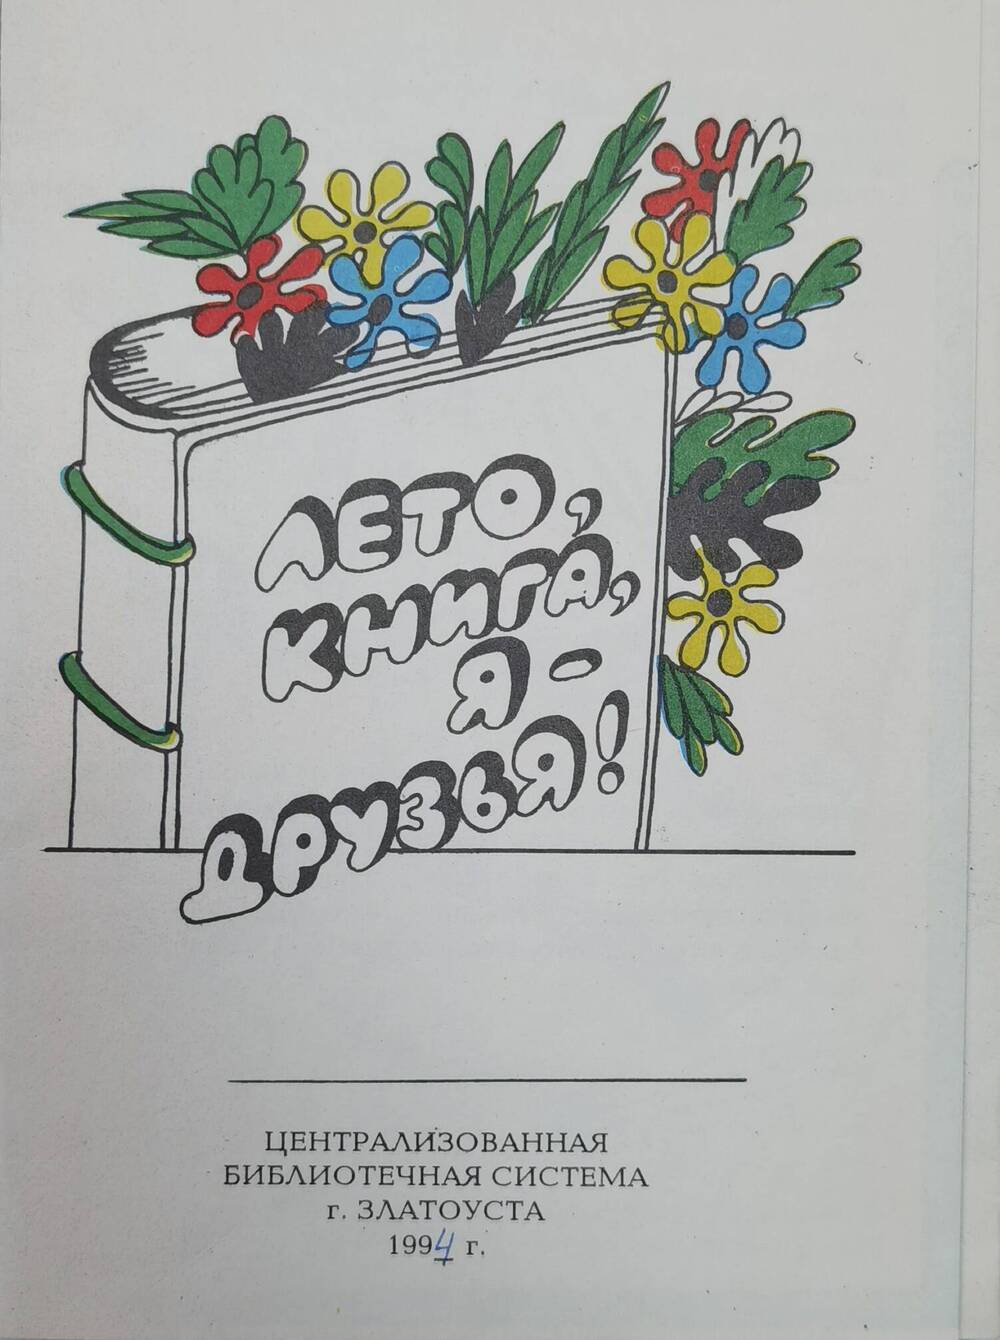 Буклет Лето, книга, я - друзья ЦБС, 1994 г.